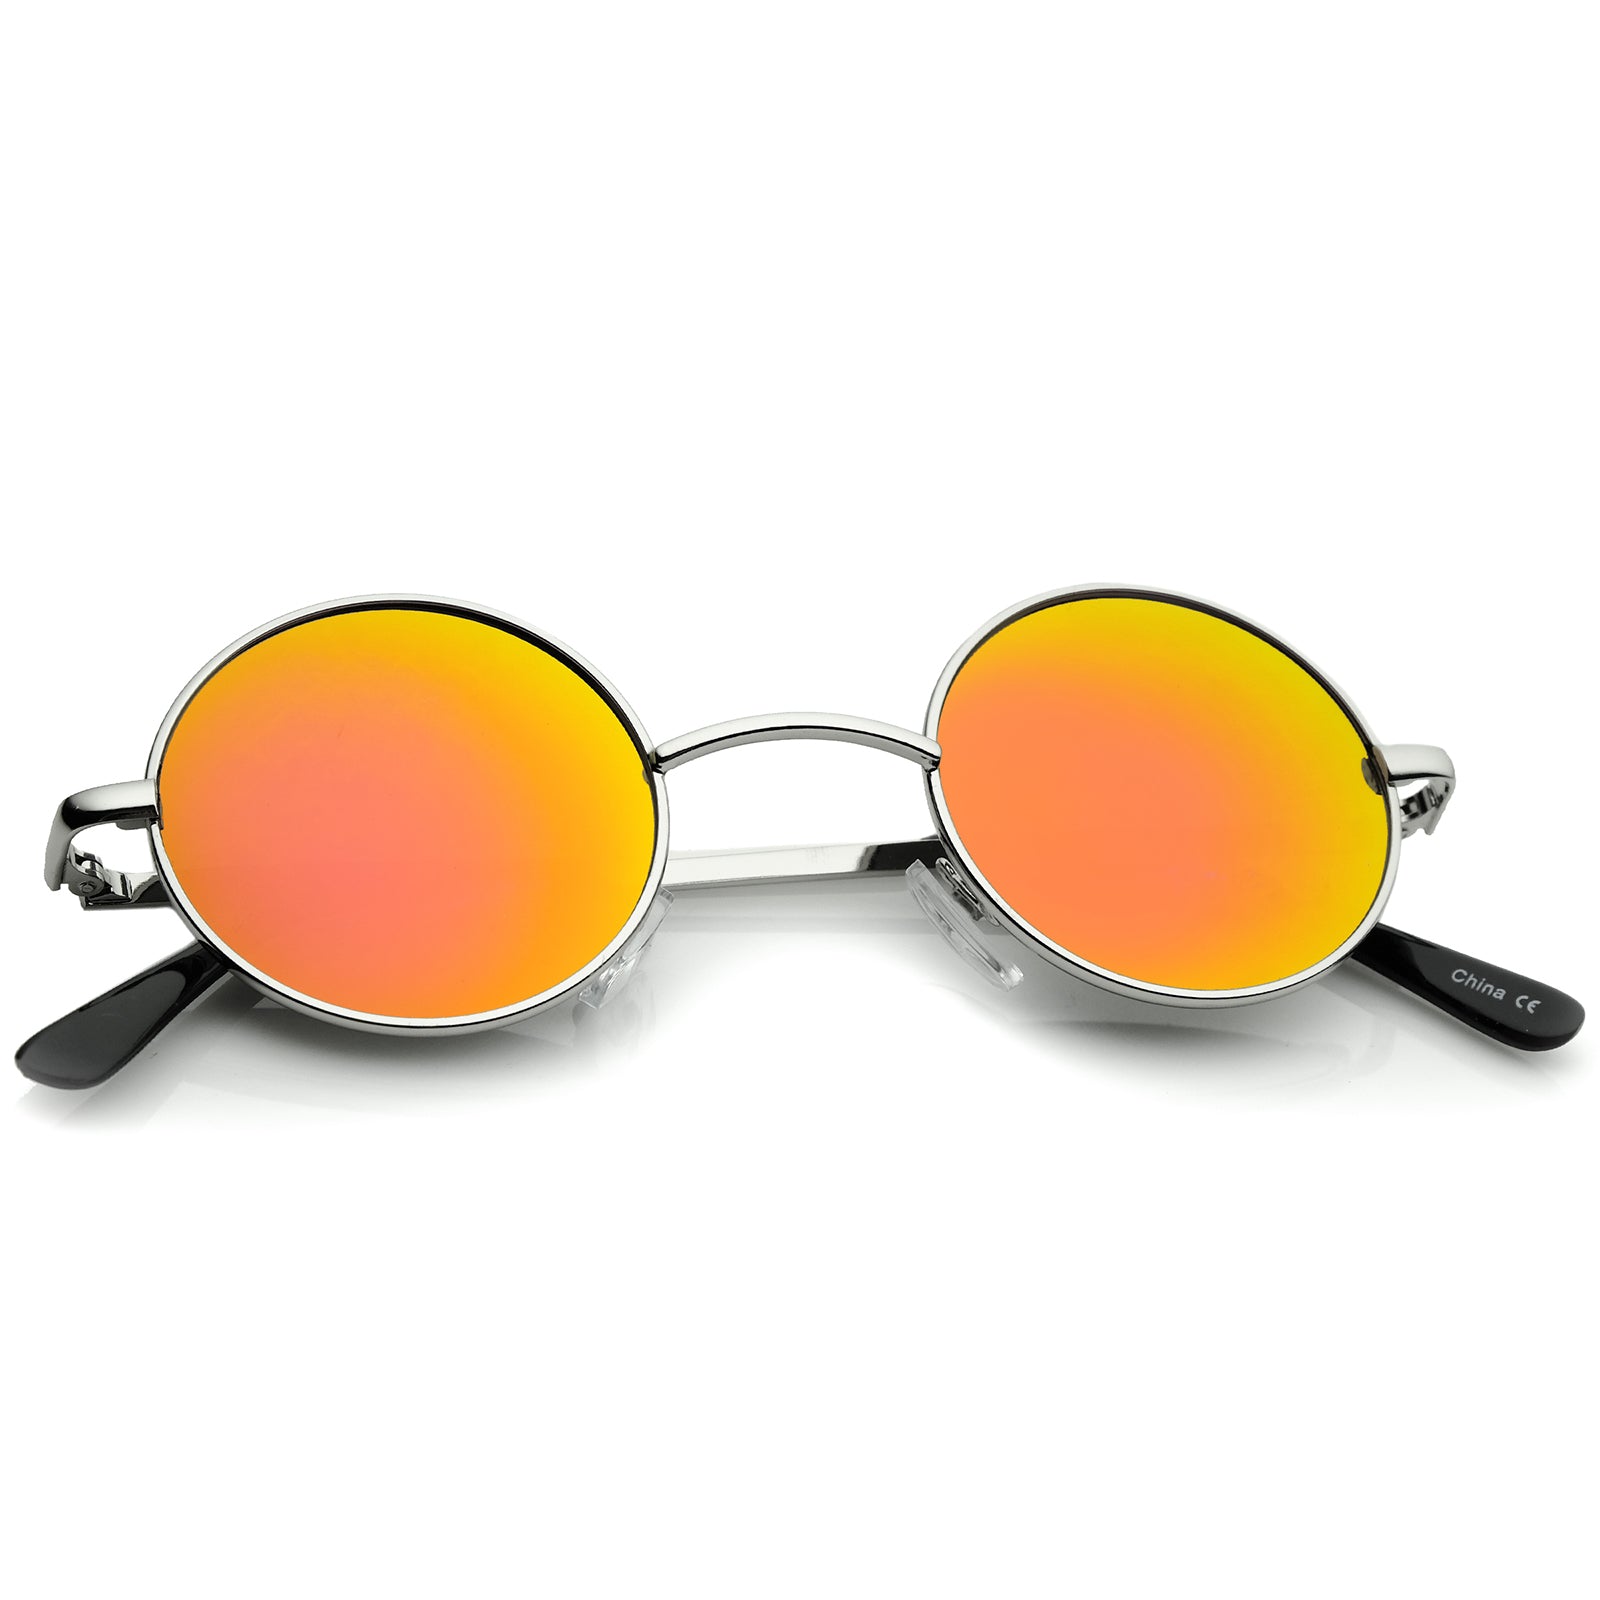 Style 41 Colored Small Sunglasses Metal Round Lennon Lens Mirror Retro